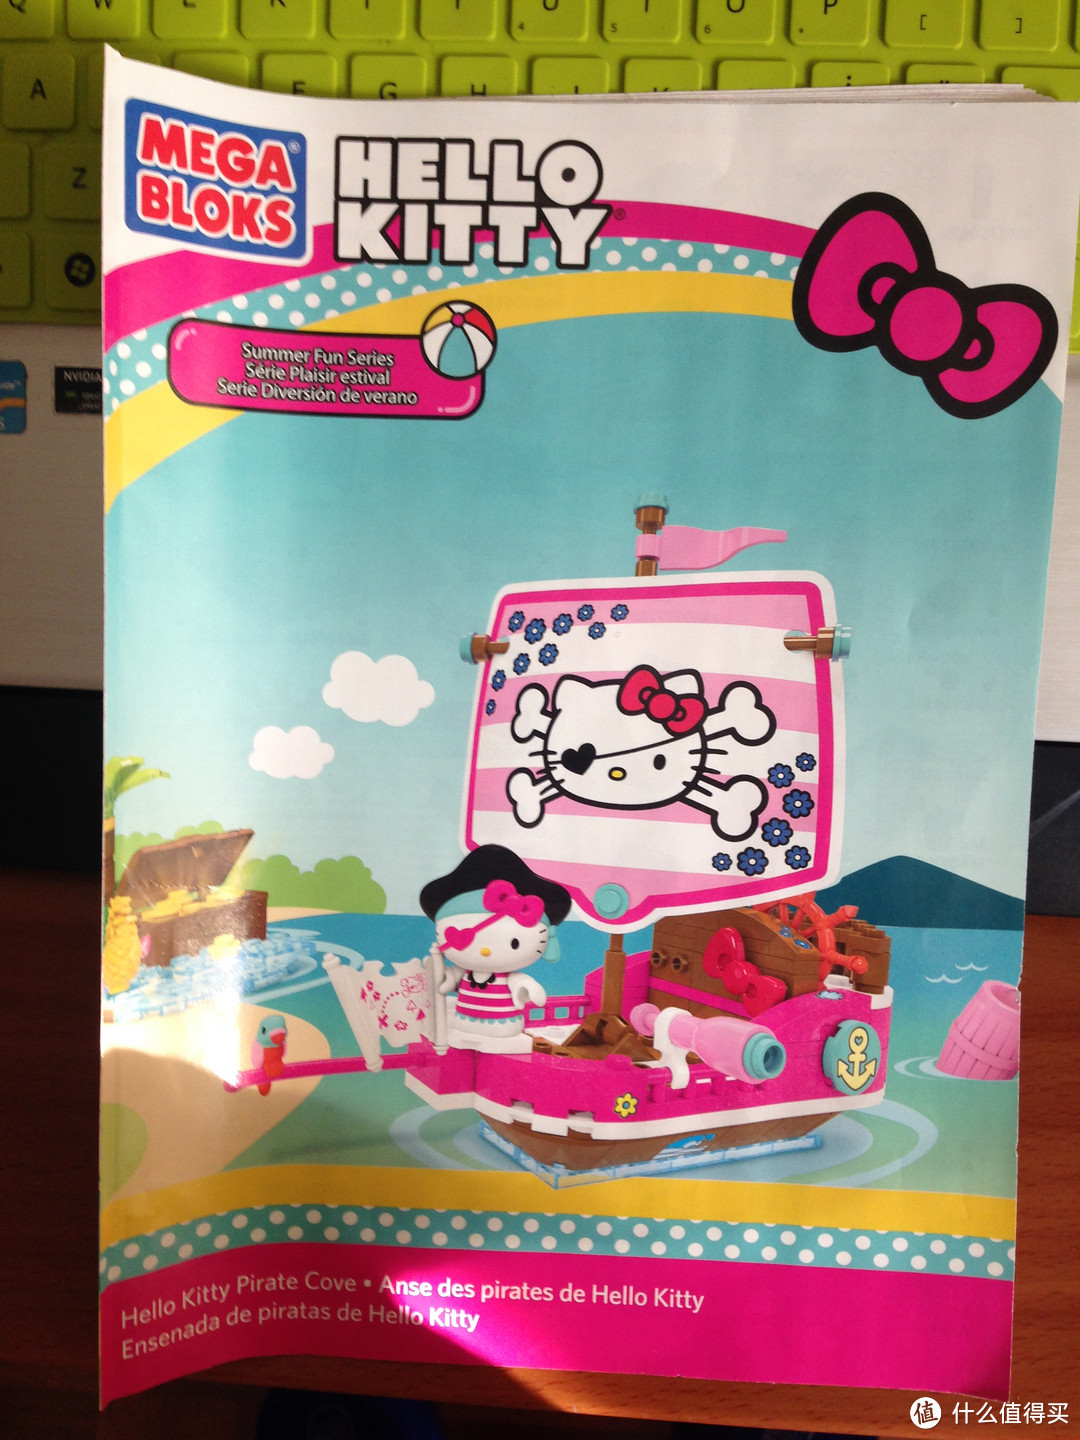 Mega Bloks Hello Kitty 系列简单开箱